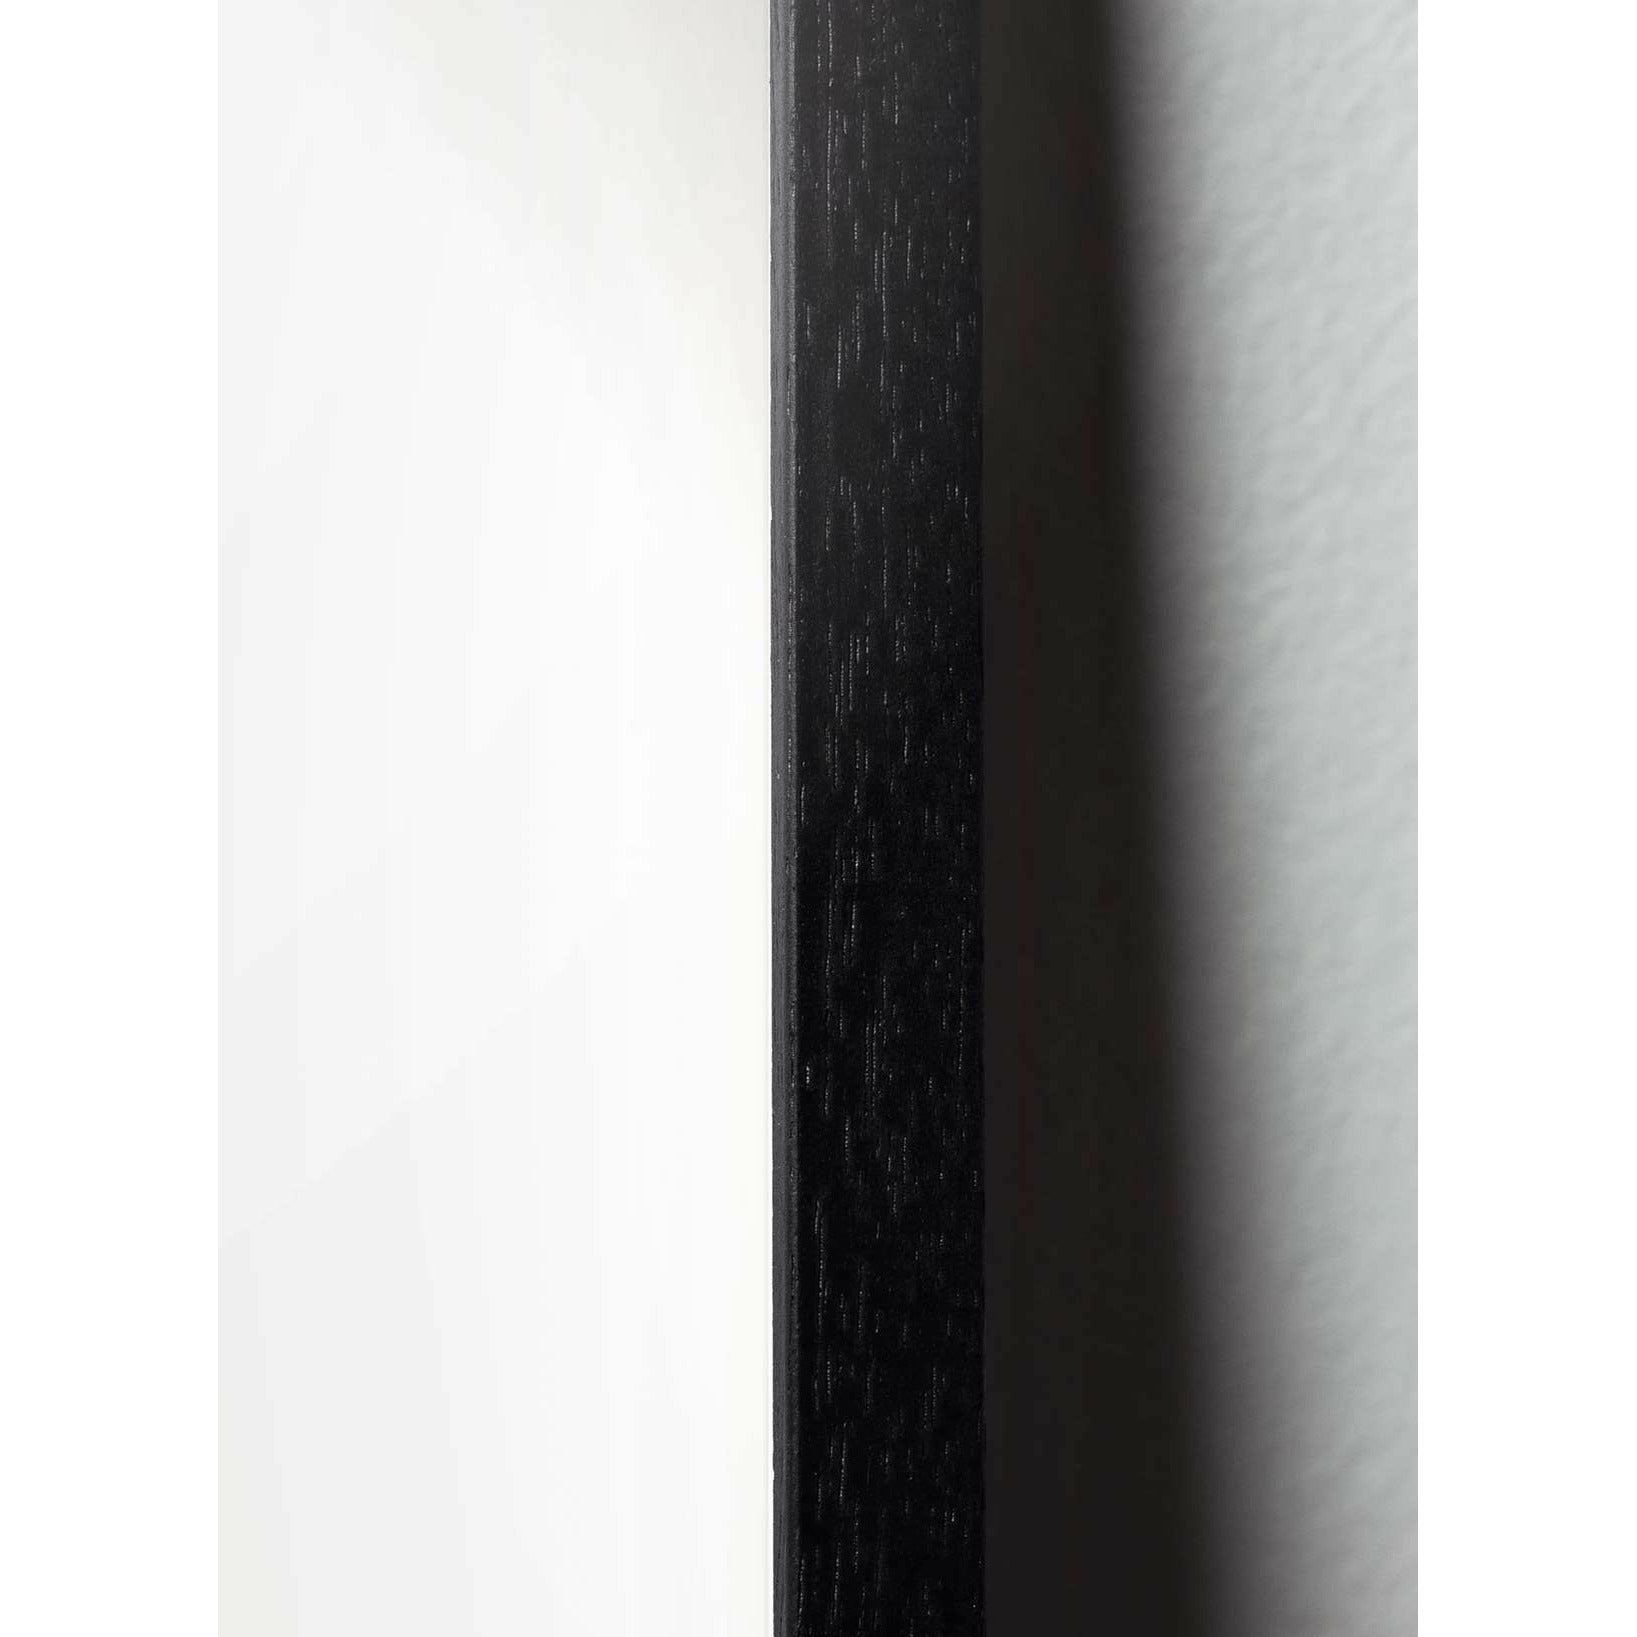 Póster de clip de papel swan de creación, marco en madera lacada negra 50x70 cm, fondo rosa